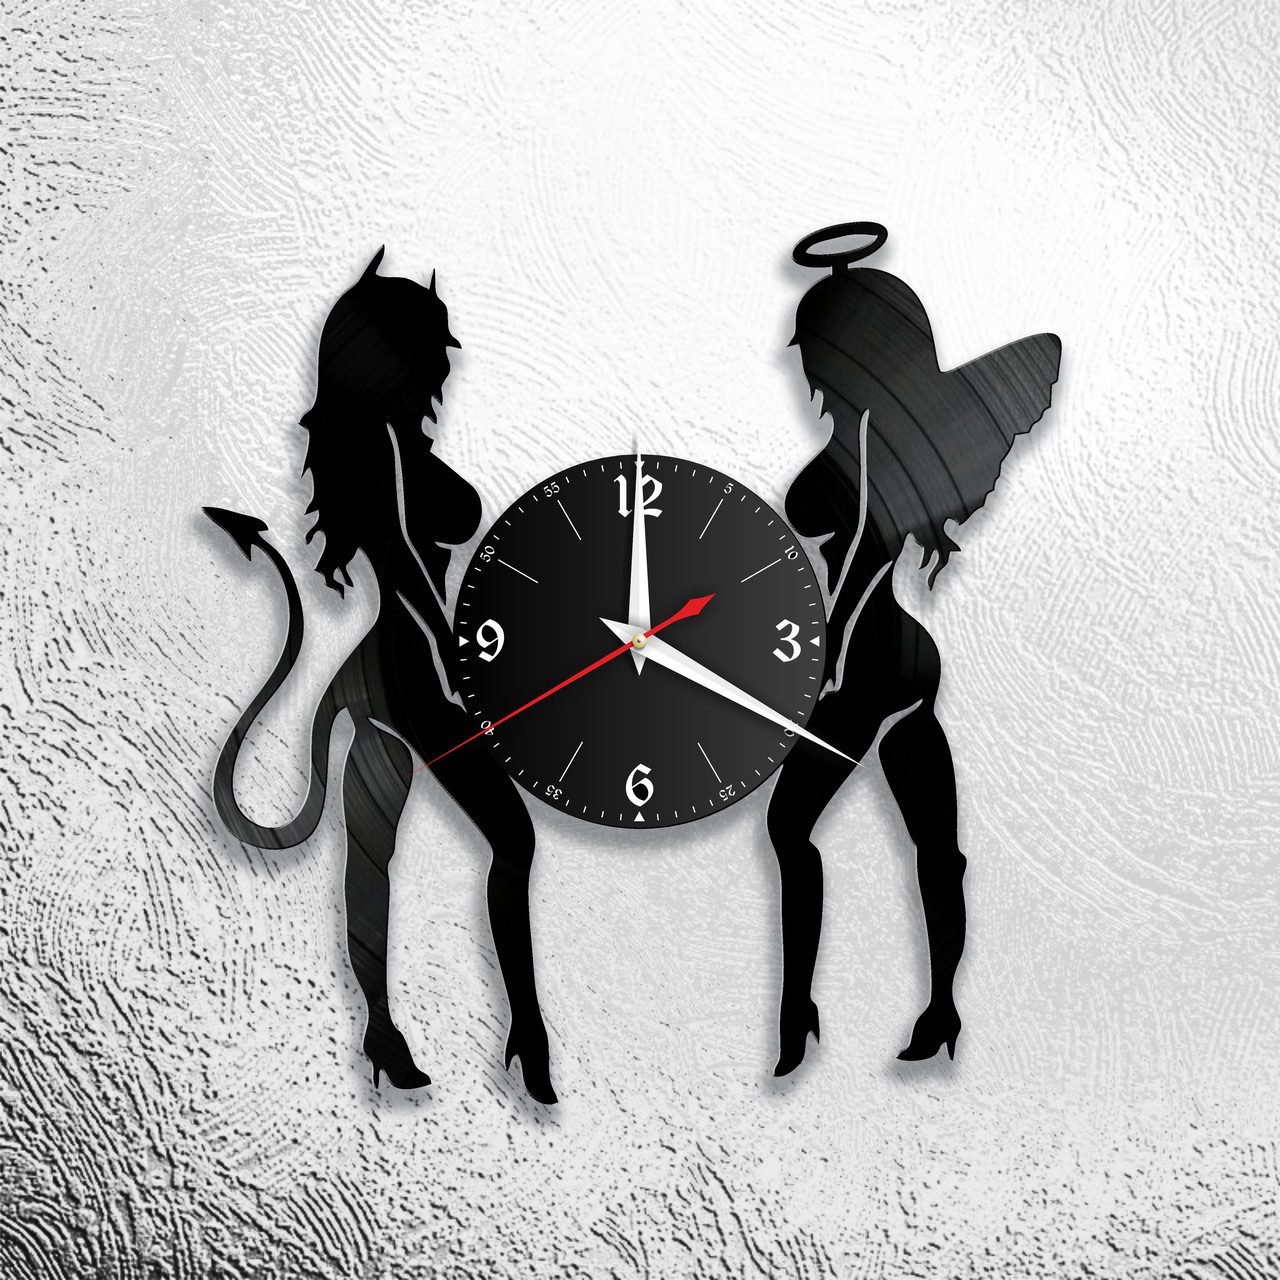 Оригинальные часы из виниловых пластинок "Ангел и бес" версия 1, фото 1